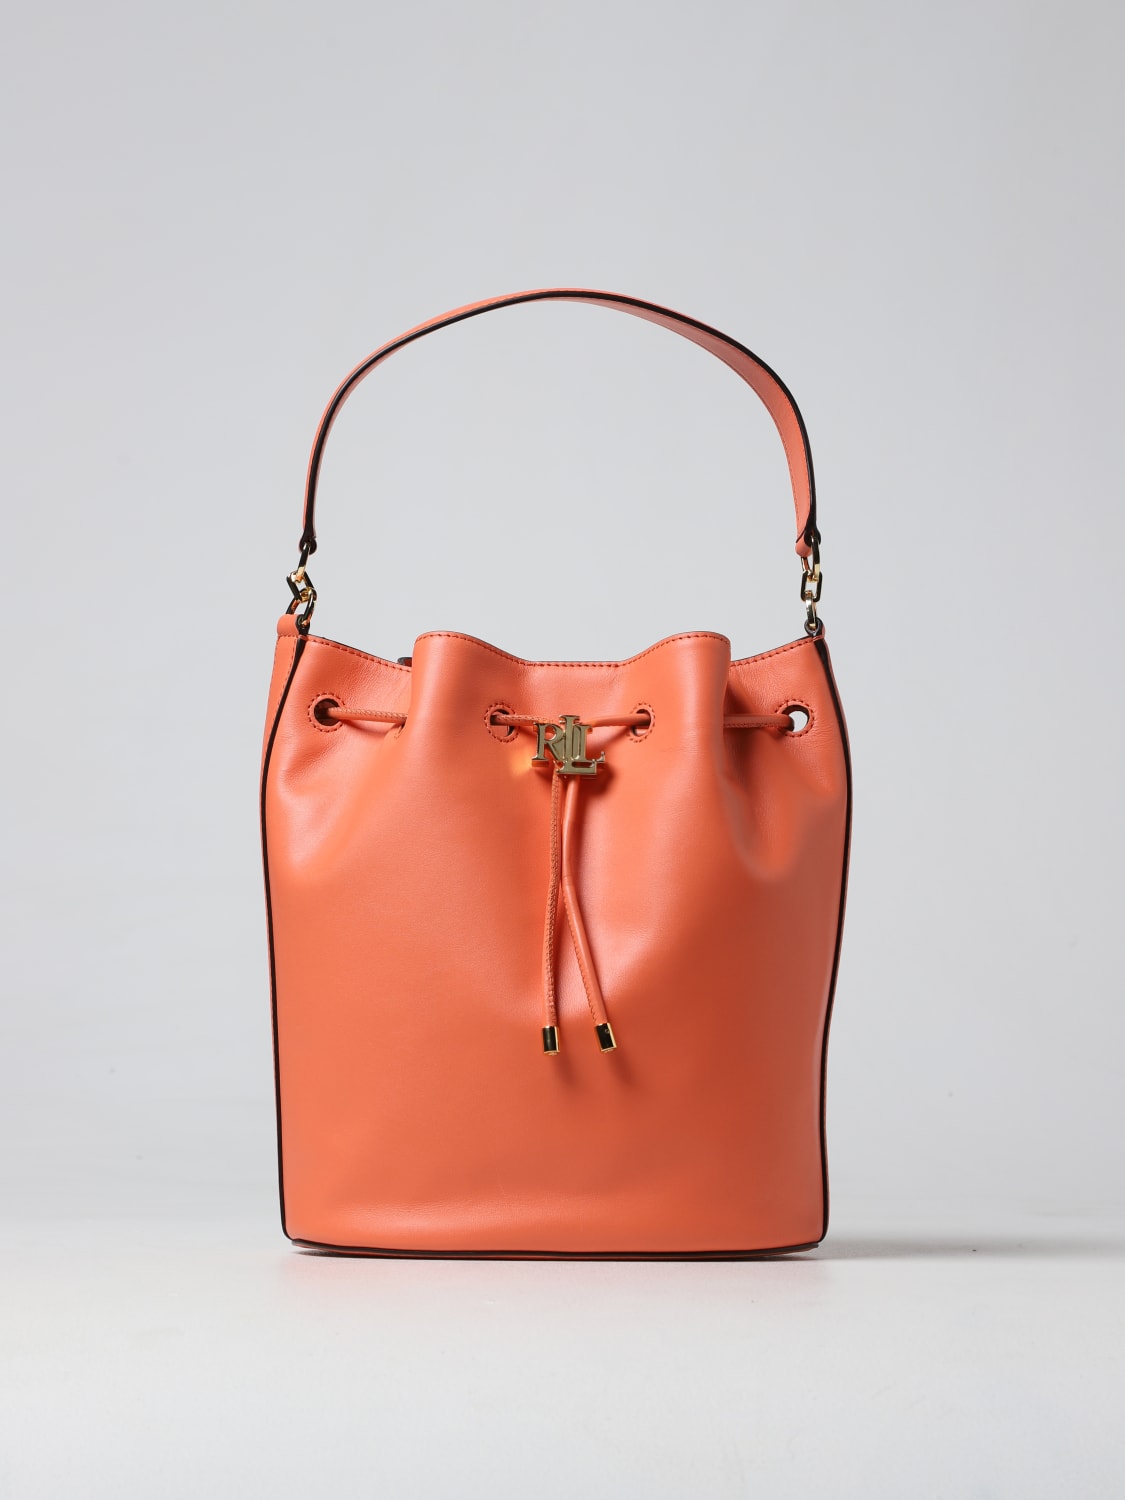 LAUREN RALPH LAUREN Handbags Lauren Ralph Lauren For Female for Women